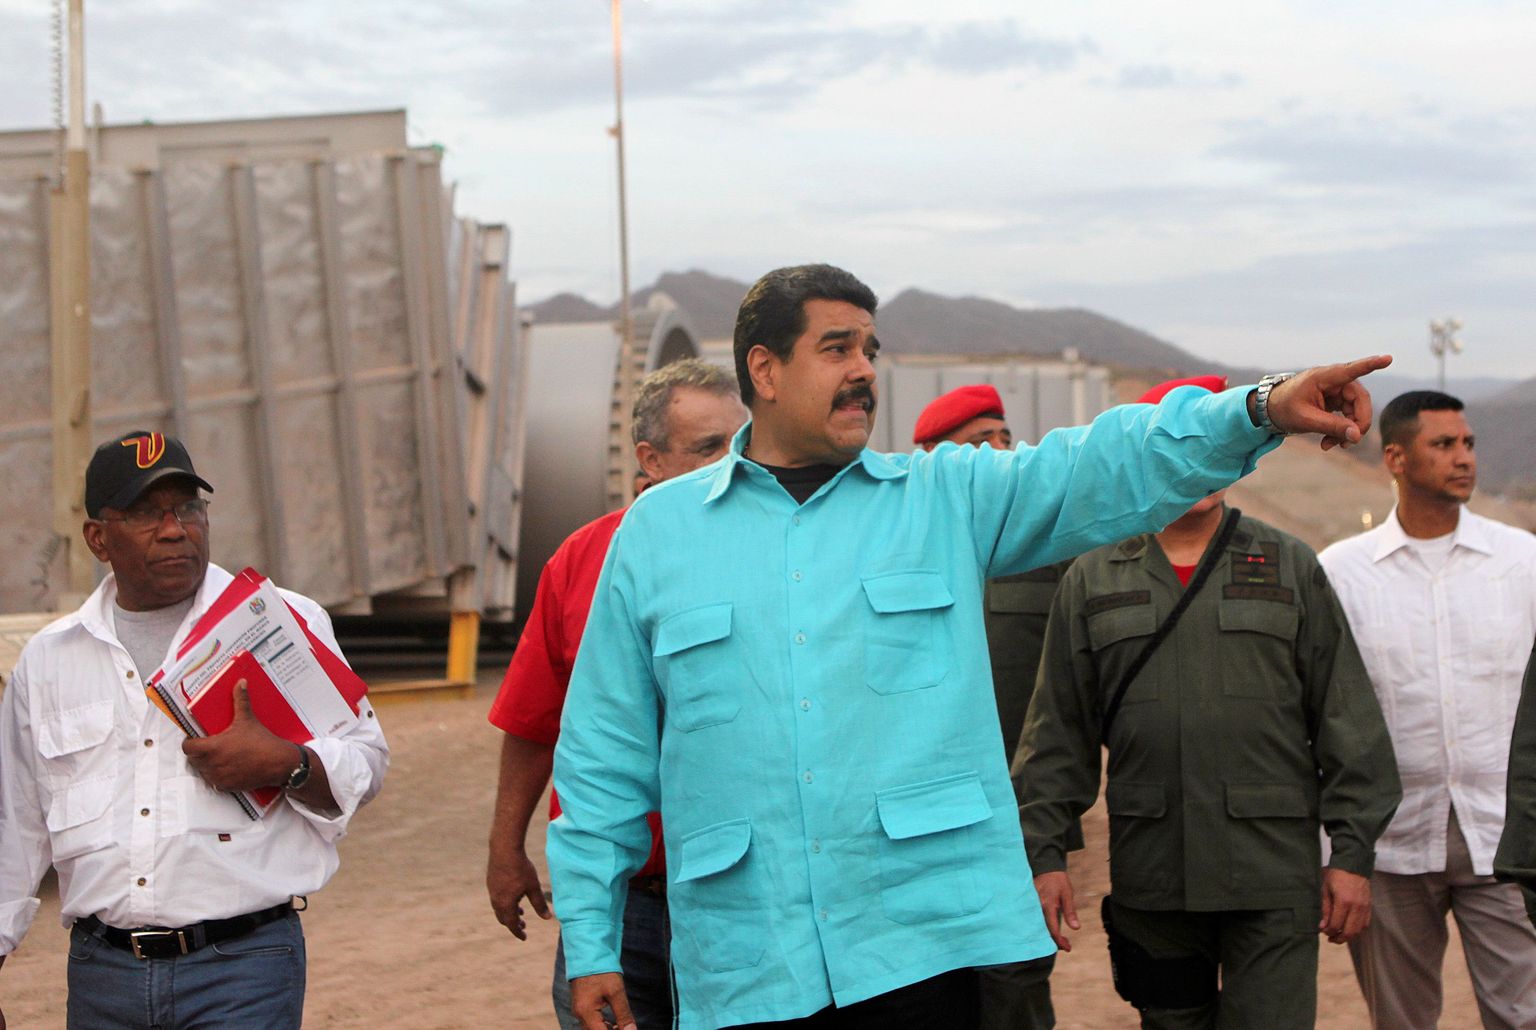 President Nicolás Maduro on lubanud jätkata riiki vaevavale majanduskriisile vaatamata 1999. aastal eelkäija Hugo Cháveze alustatud sotsialistlikku revolutsiooni.